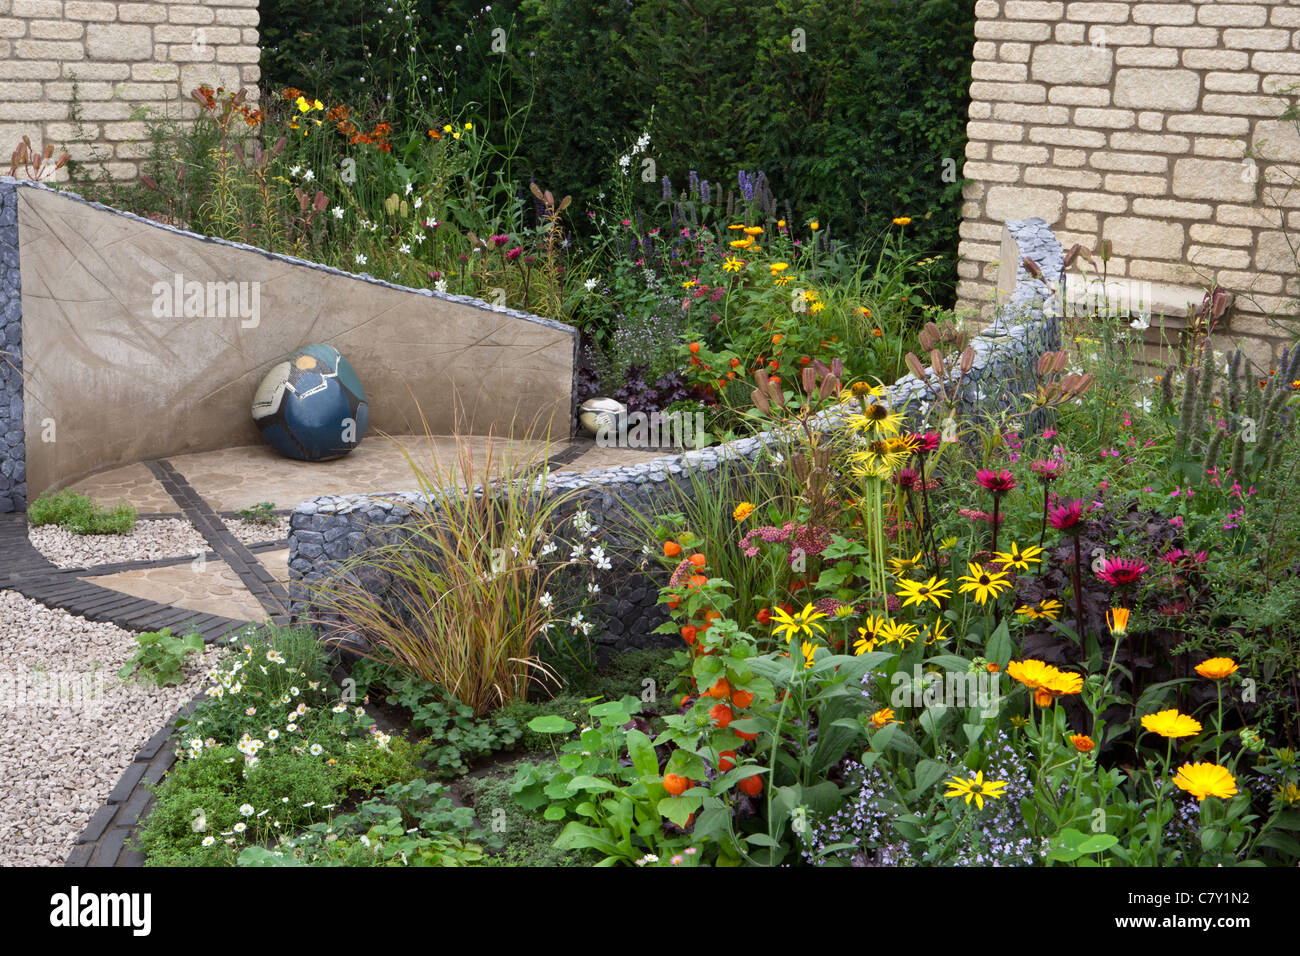 Petite cour de Cottage jardin urbain avec cercle circulaire pierre pavée et patio en gravier mixte frontière d'été limite de couverture Royaume-Uni Banque D'Images